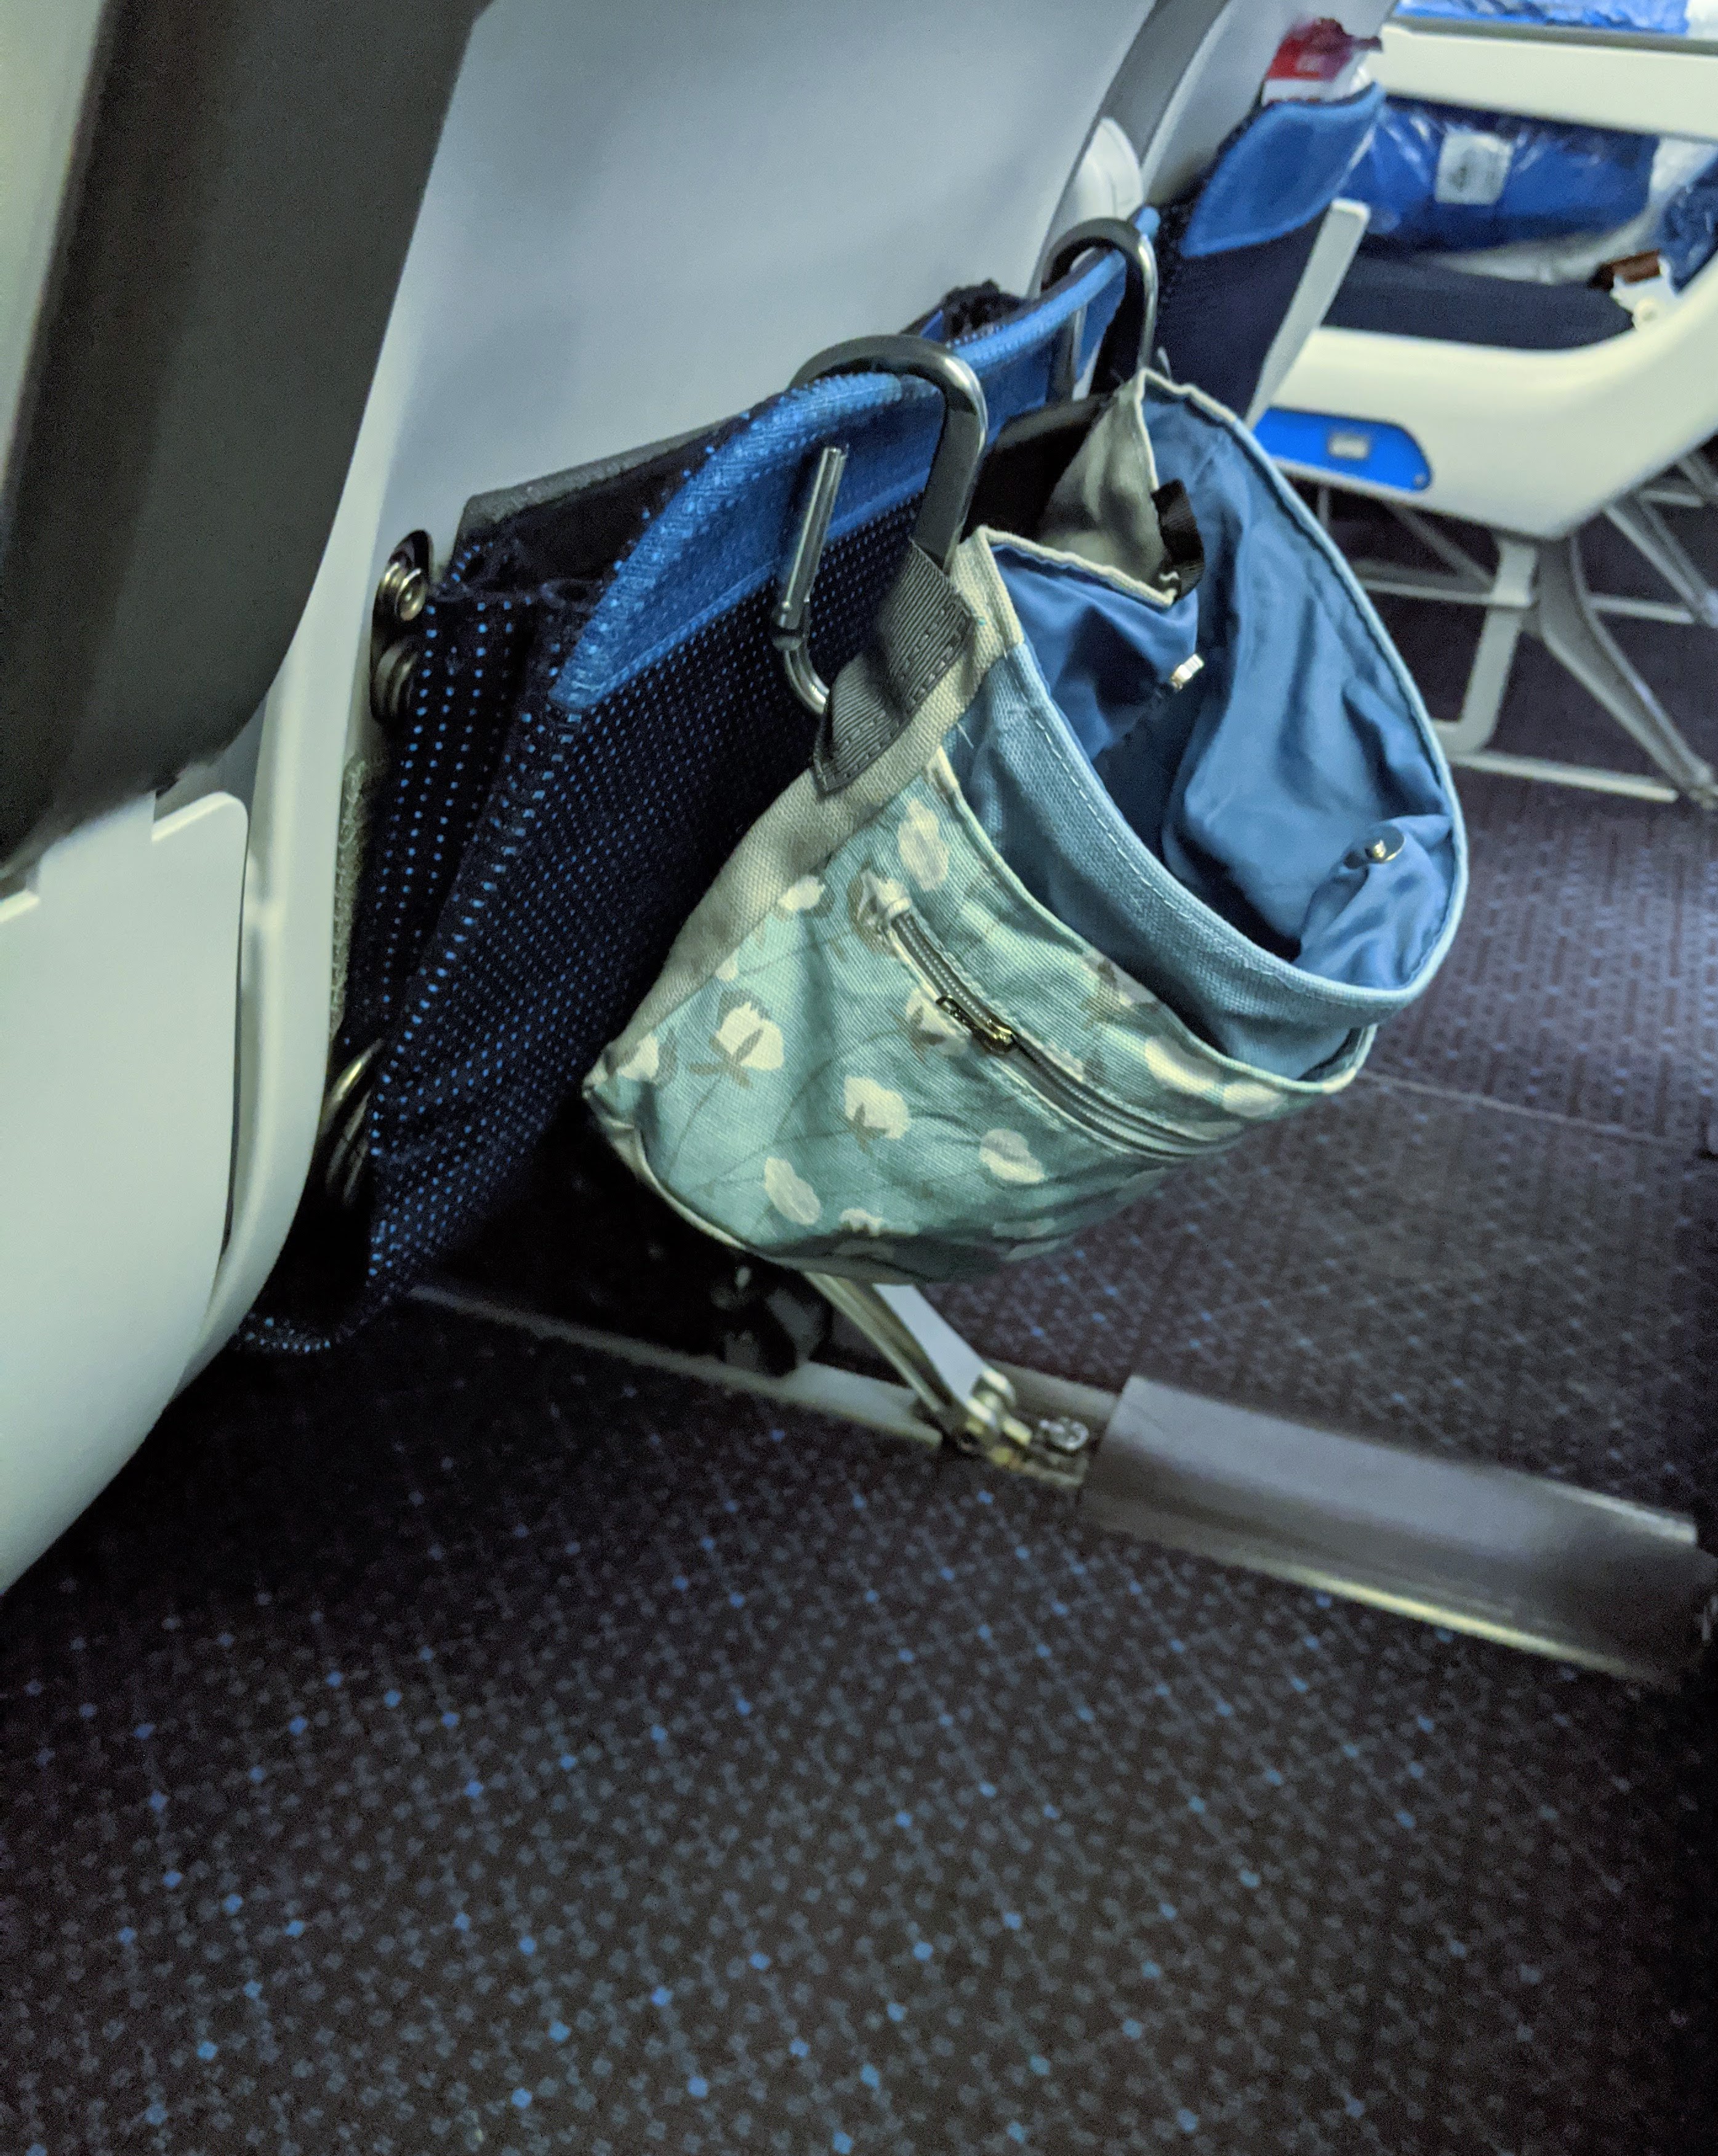 airplane seat bag